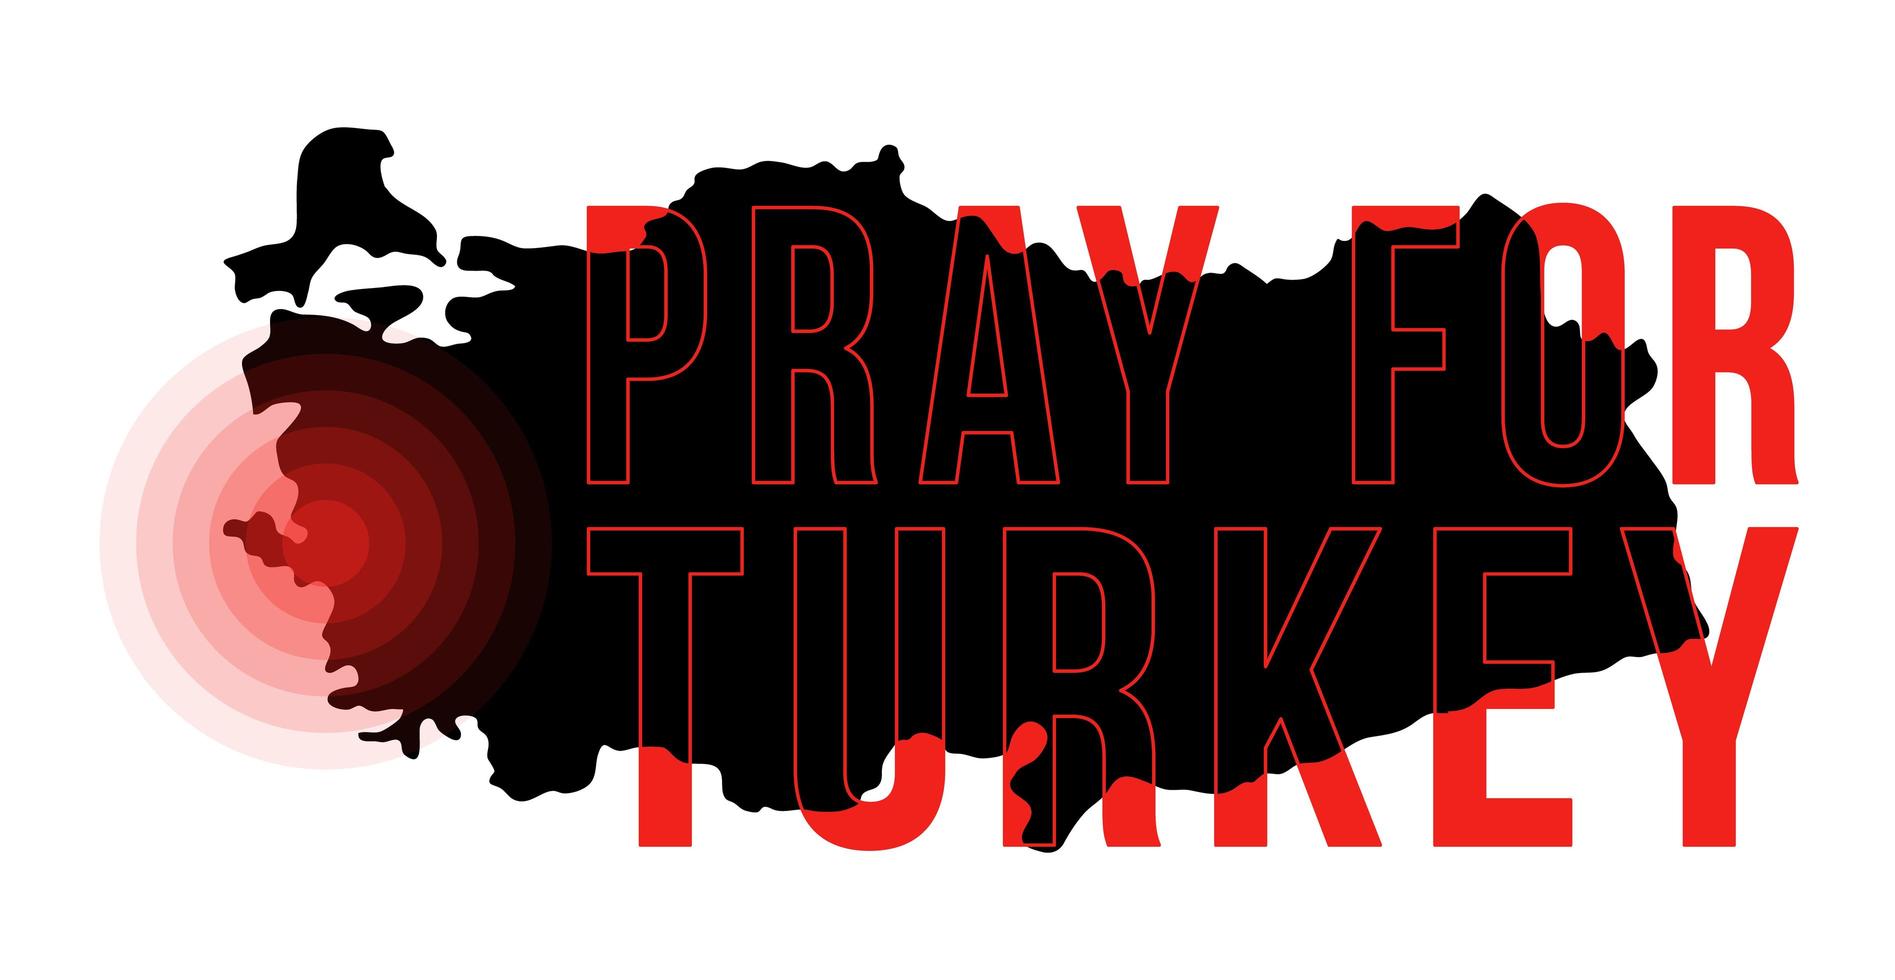 l'epicentro del terremoto in Turchia. prega per il tacchino. illustrazione vettoriale mappa con il testo che chiede prega a causa di un forte terremoto vicino a Izmir il 30 ottobre